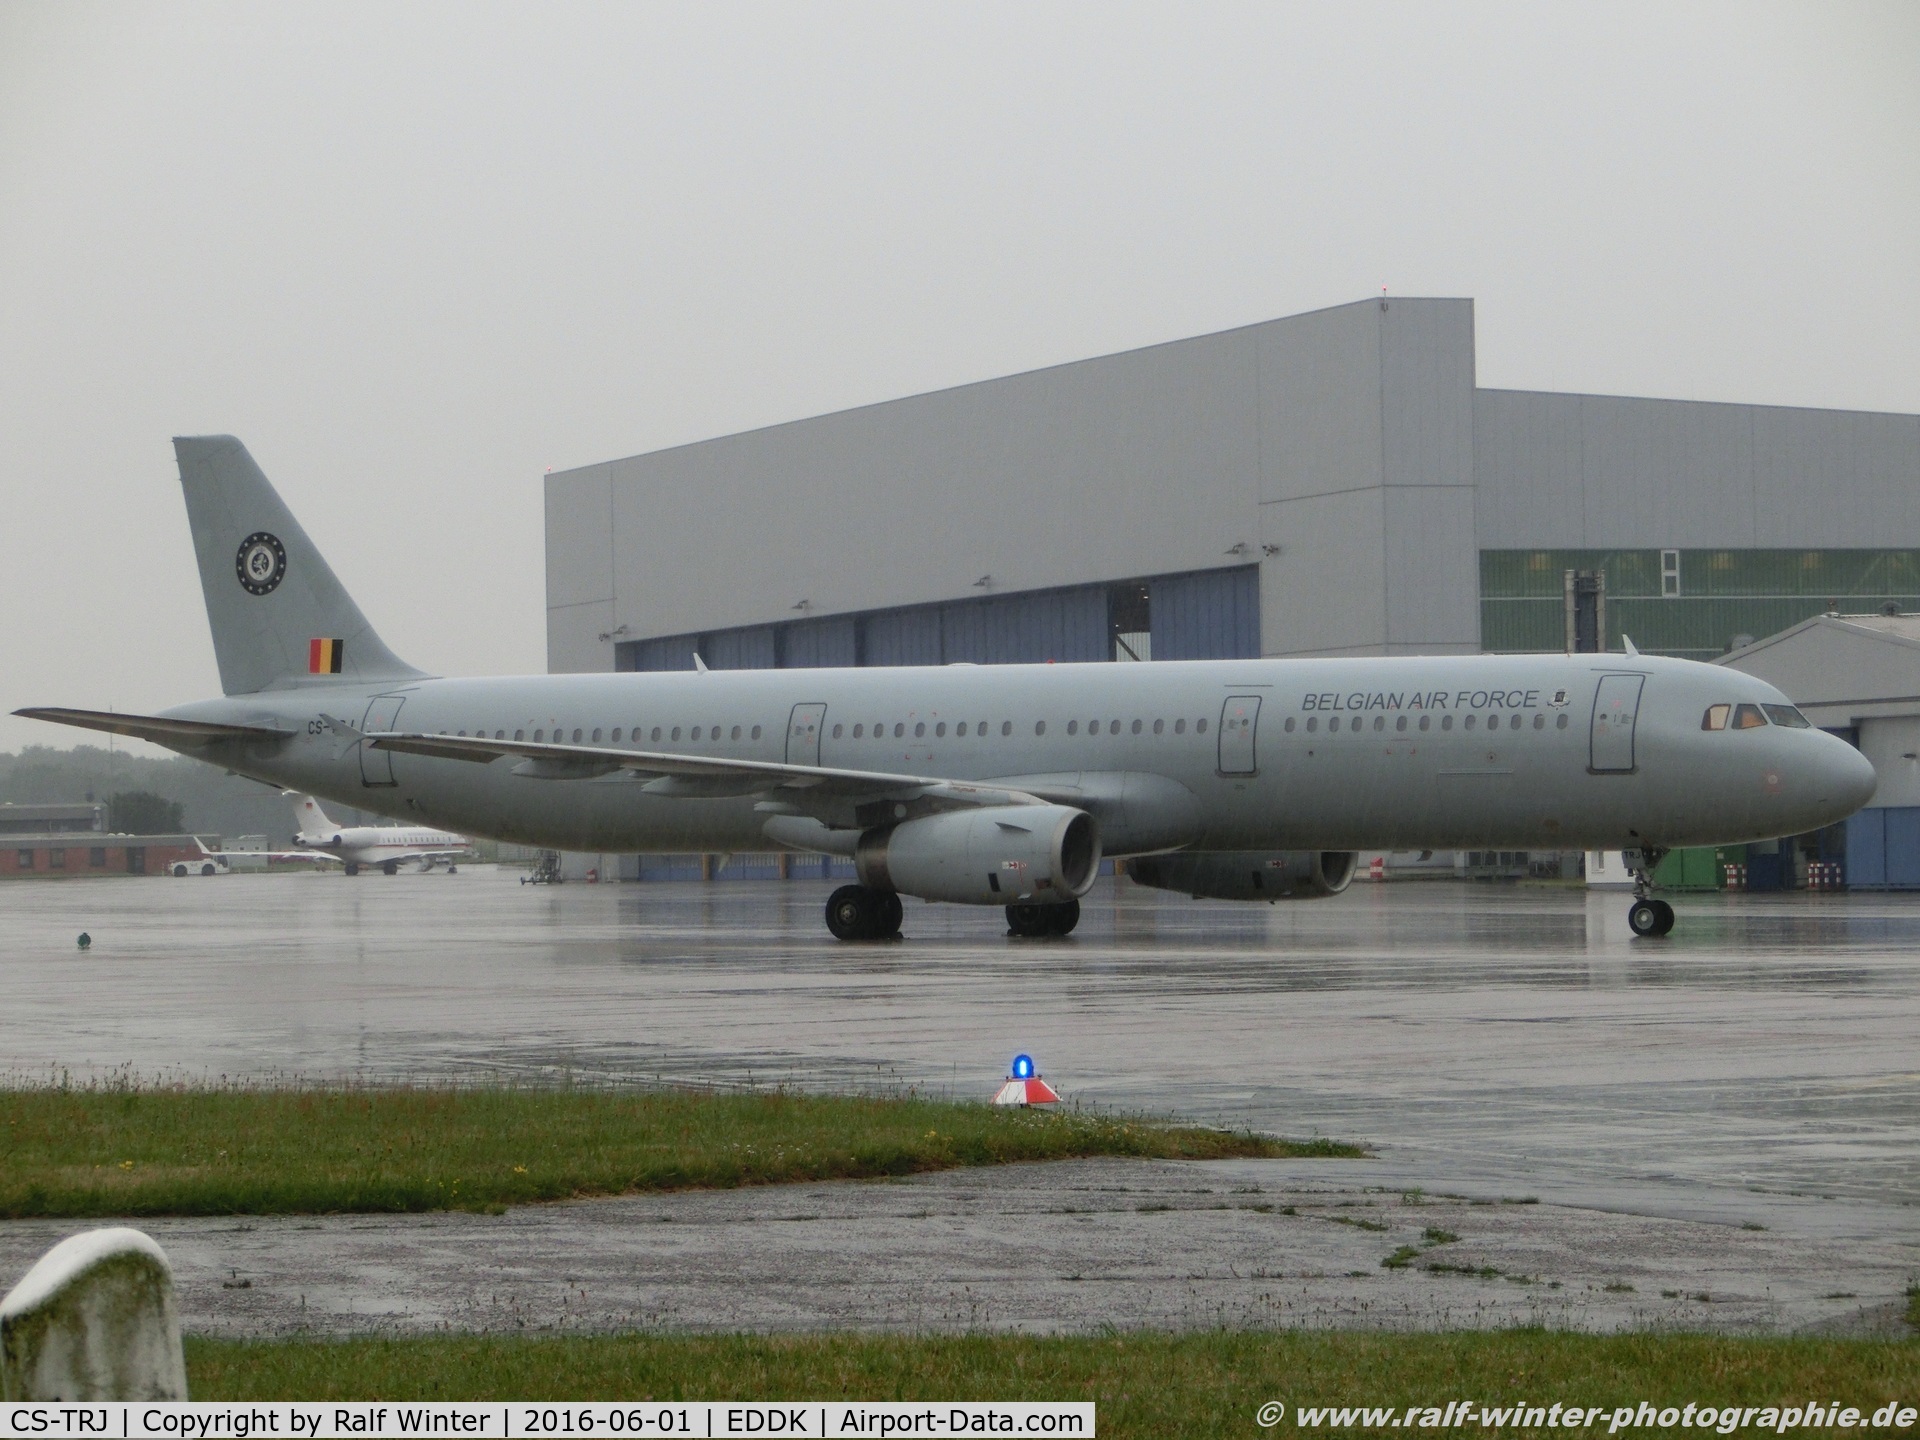 CS-TRJ, 1999 Airbus A321-231 C/N 1004, Airbus A321-231 _ 5K HFY Hi Fly opf Belgian Air Force - 1004 - CS-TRJ - 01.06.2016 - CGN